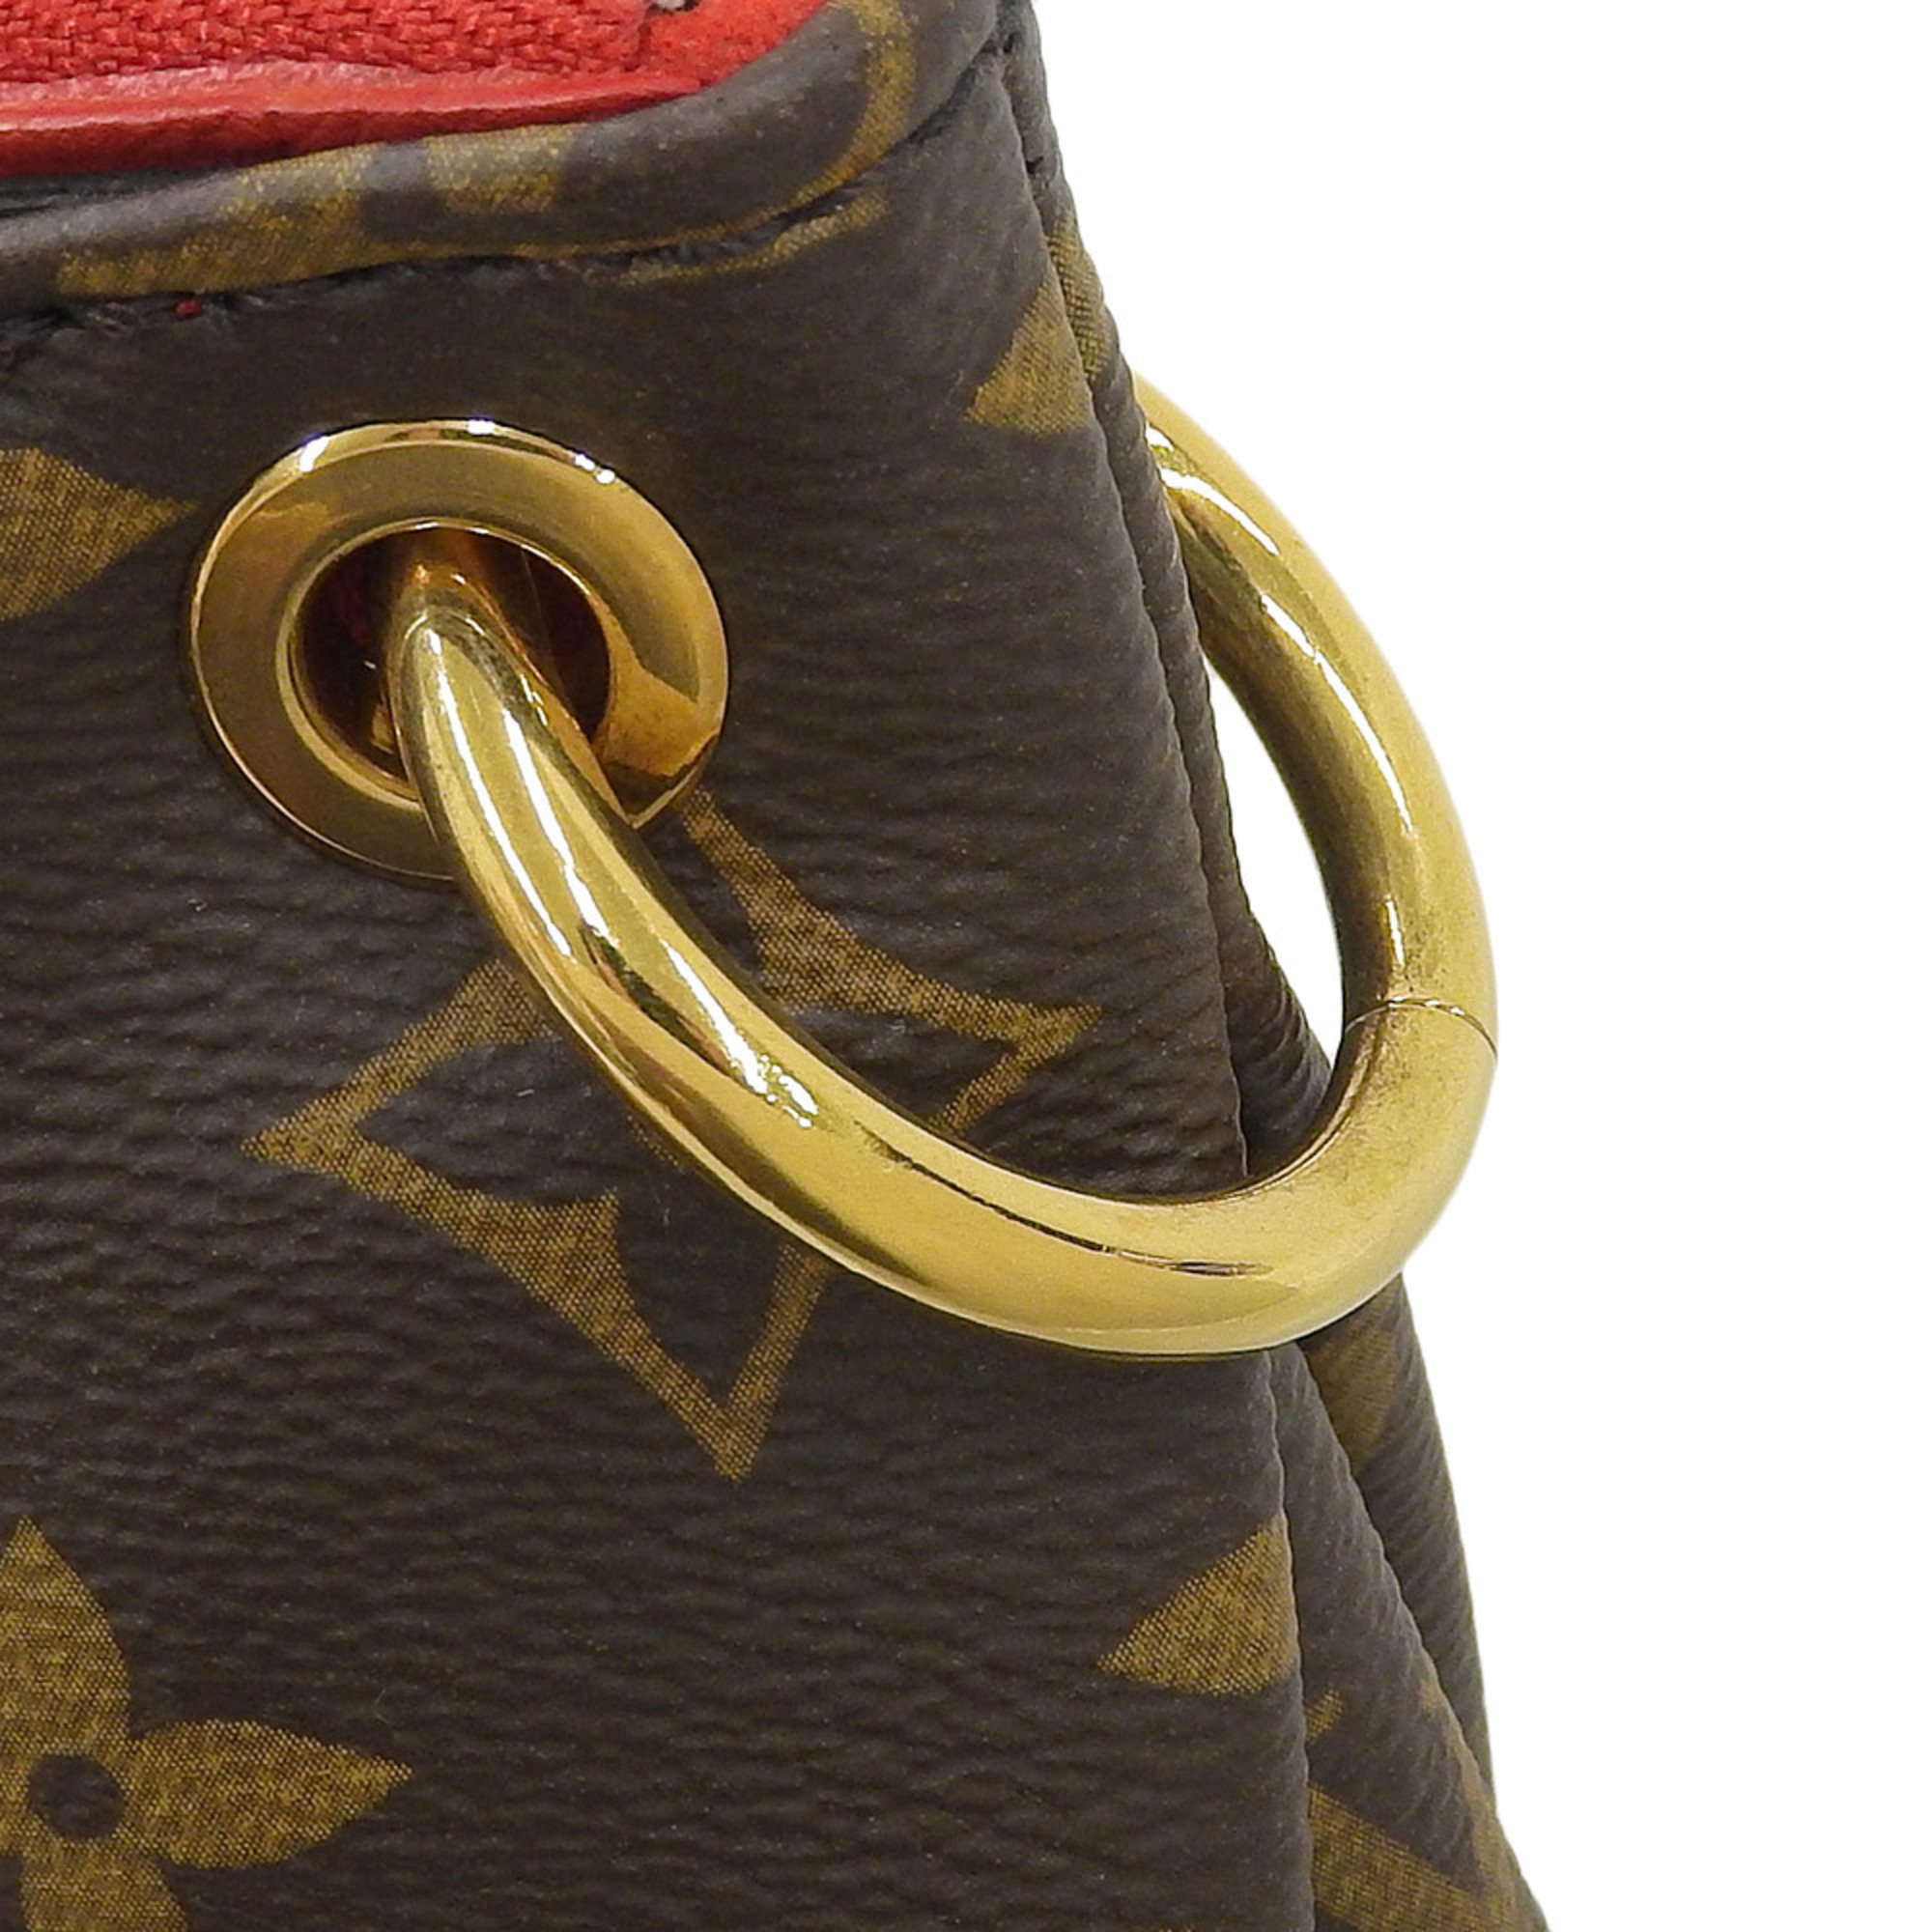 Louis Vuitton LOUIS VUITTON Monogram Pallas BB M41241 Handbag Shoulder Bag Cerise